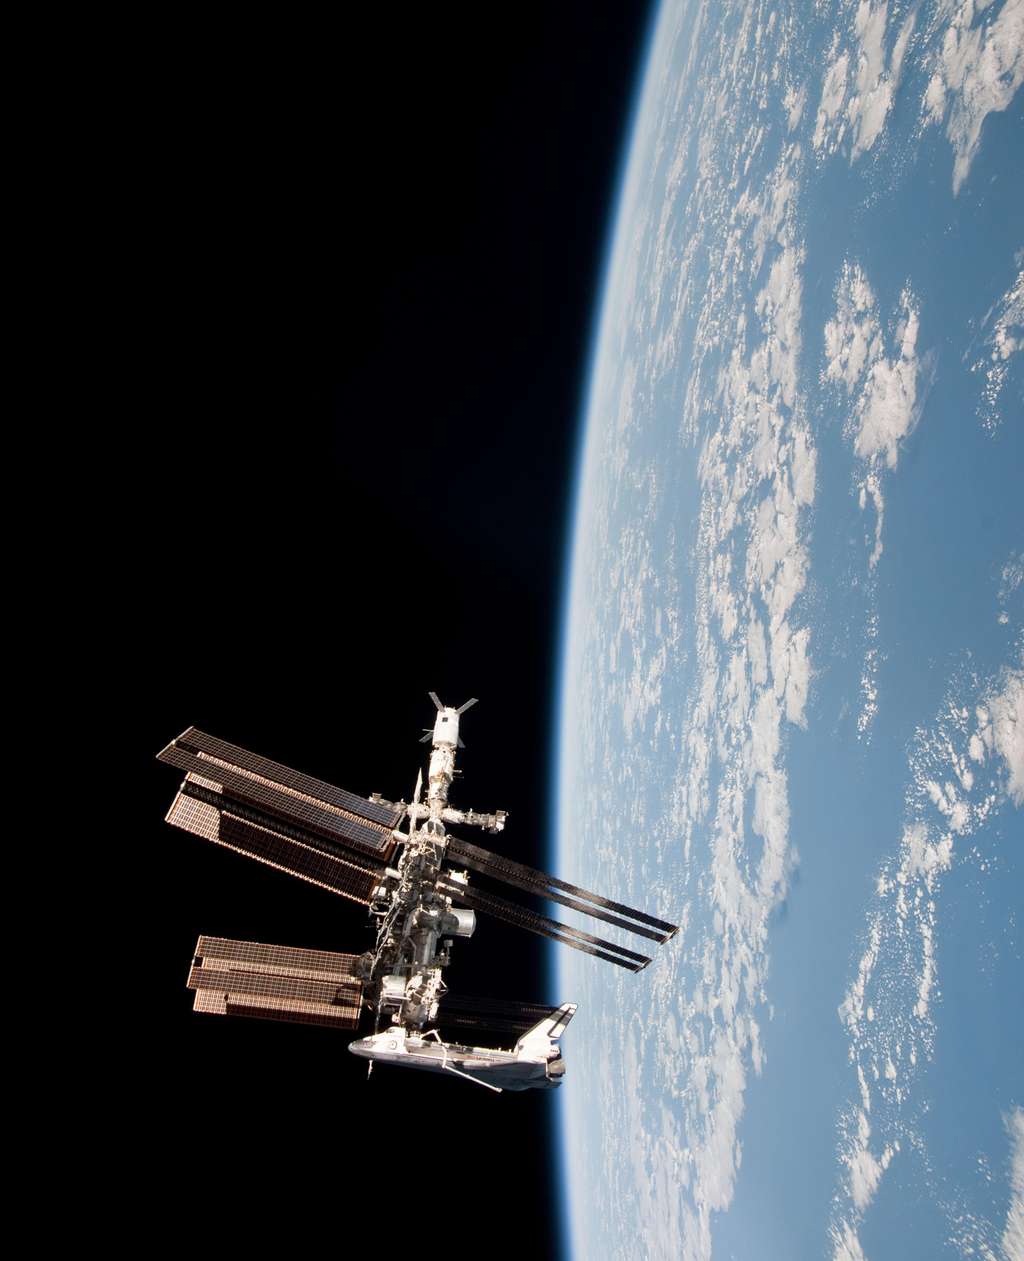 Cette image permet de se faire une idée de la taille de l'ISS en la comparant avec celle de la navette Endeavour, longue de 37 mètres pour une envergure de plus de 23 mètres. © Nasa